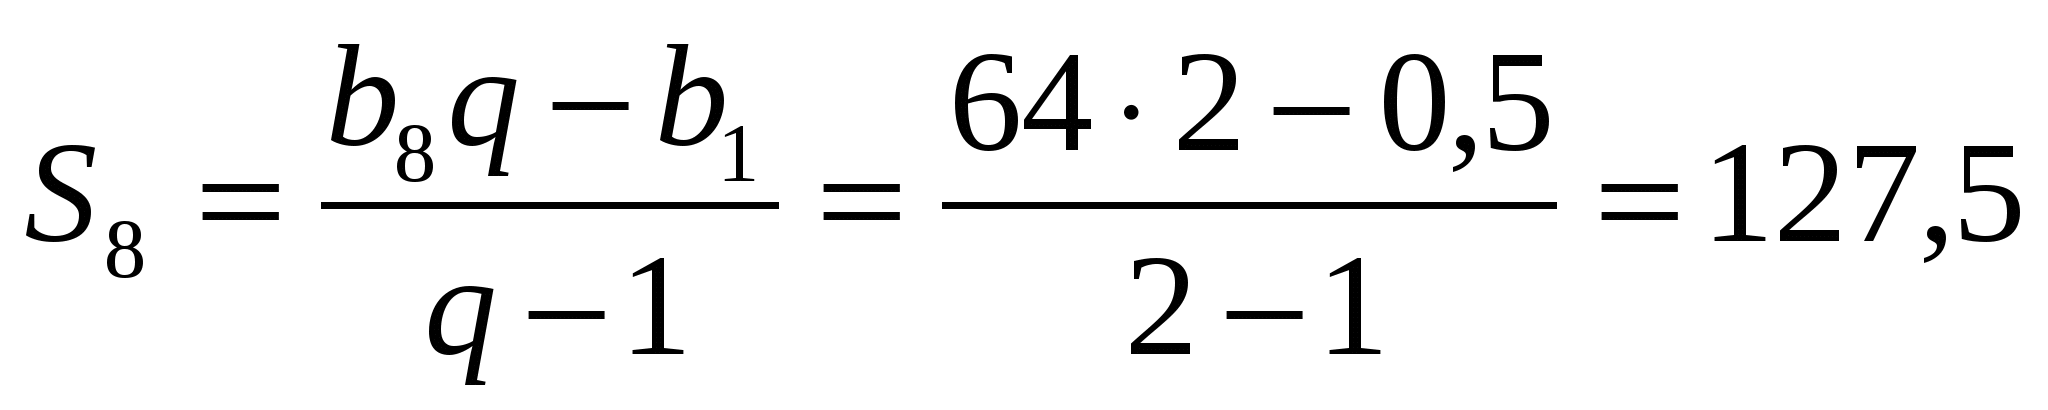 Формула суммы первых n чисел геометрической прогрессии. Геометрическая прогрессия формулы. Формула бесконечной геометрической прогрессии. Сумма бесконечной геом прогрессии.